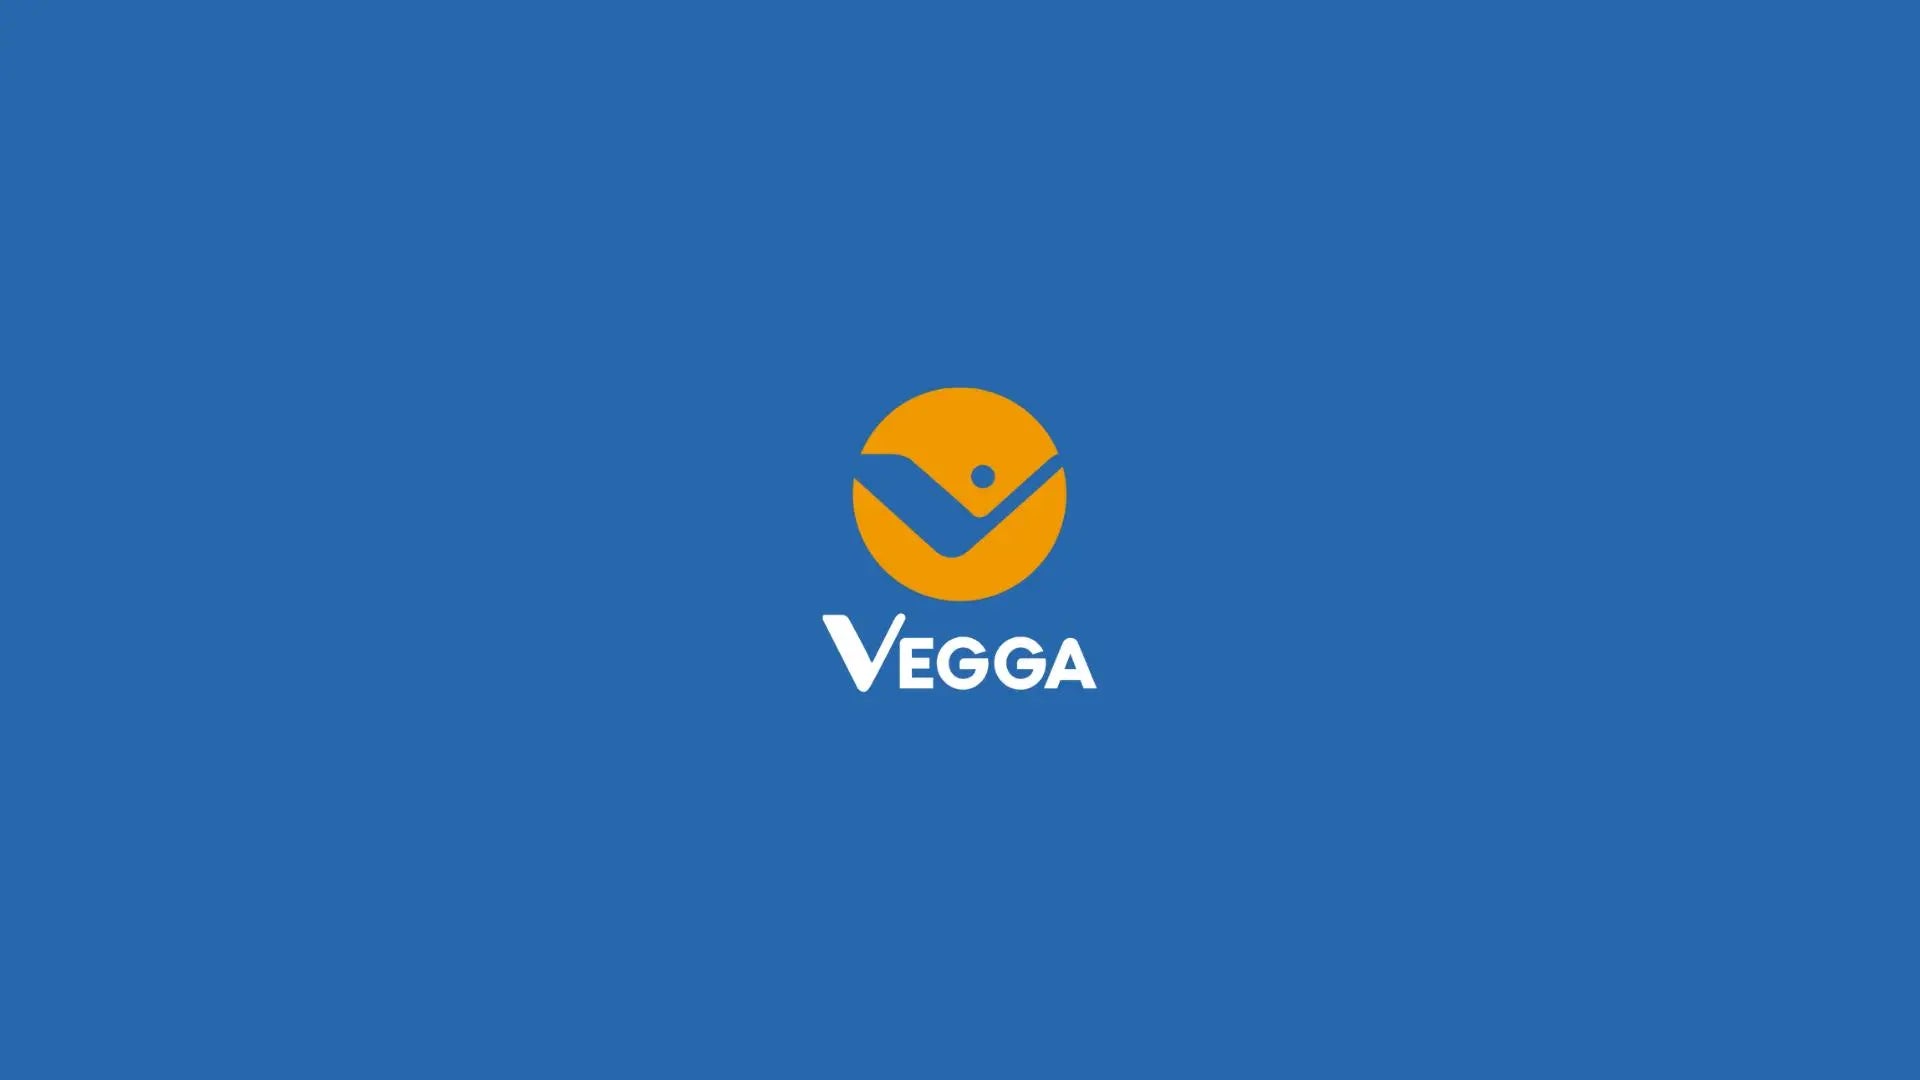 Vegga yapcr.com Costa Rica